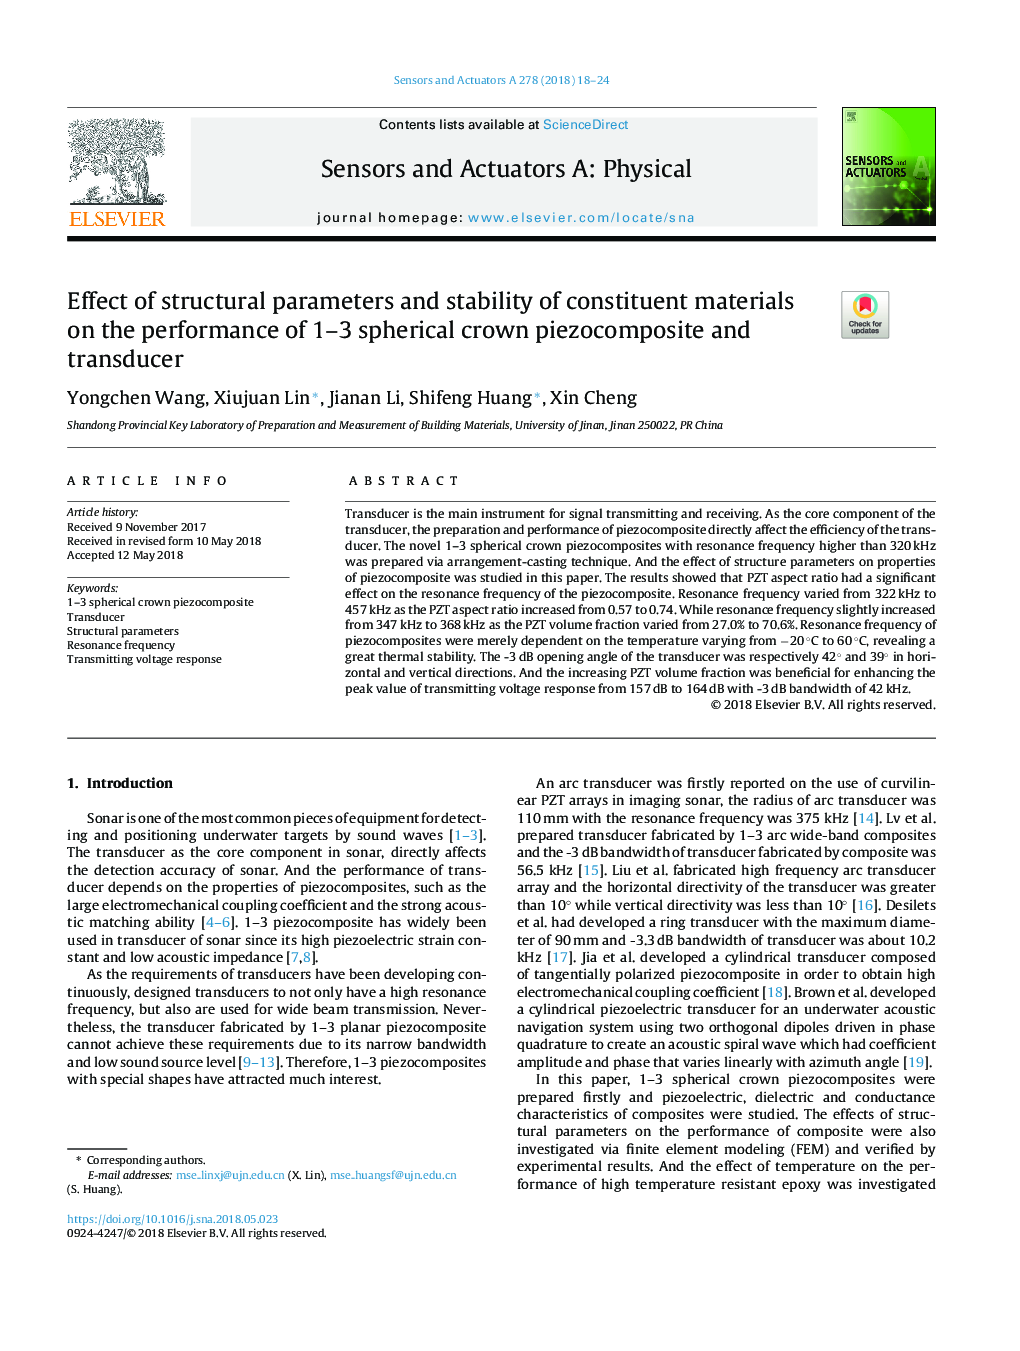 تاثیر پارامترهای ساختاری و پایداری مواد سازنده بر عملکرد پیزوکامپوزیت تاج و دوربین 1-3 کروی 